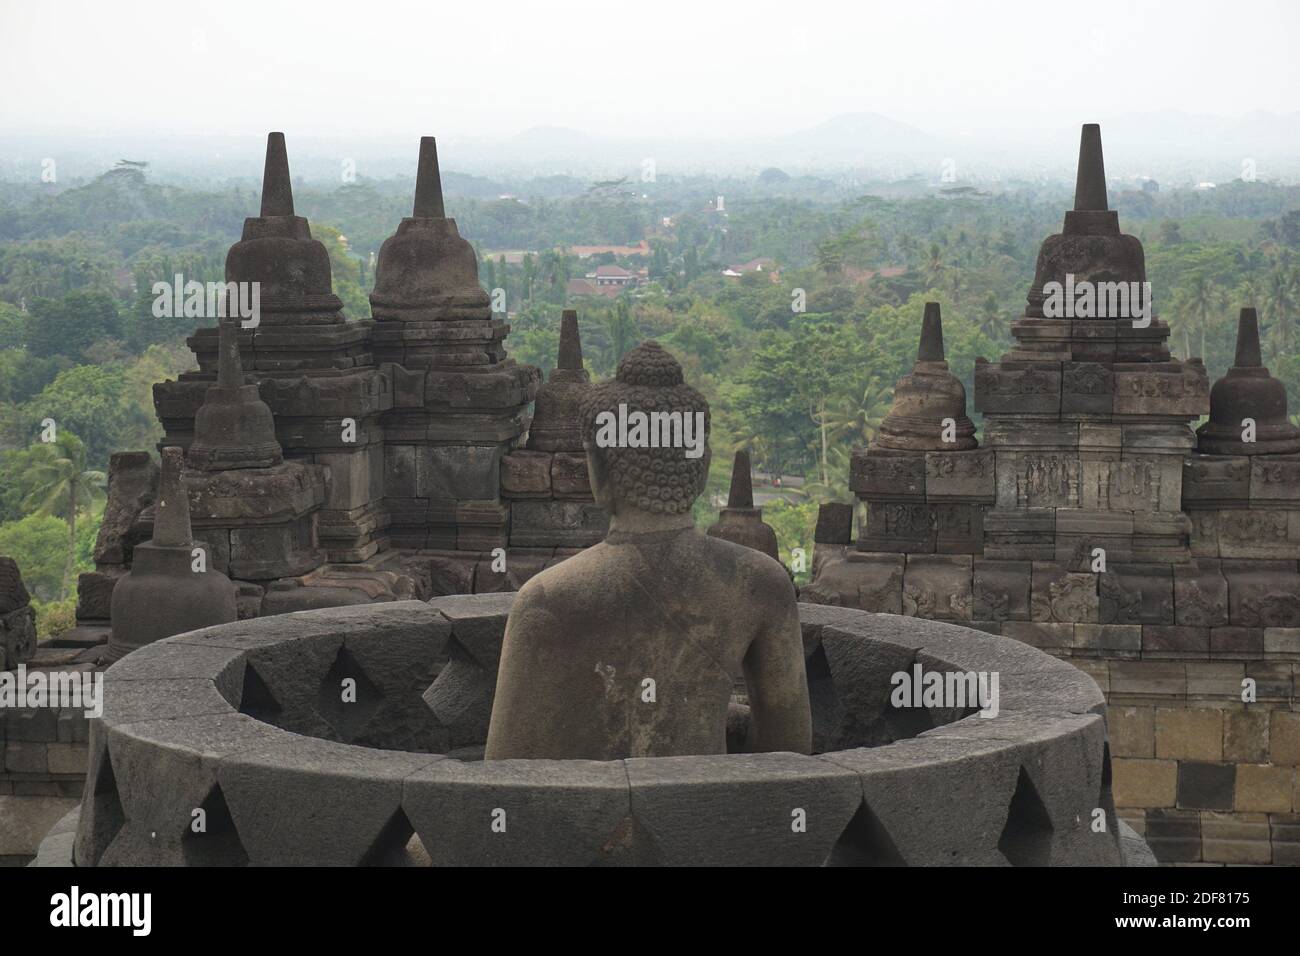 Buddhistischen Tempel von Borobudur in Yogyakarta, Java, Indonesien. Stockfoto